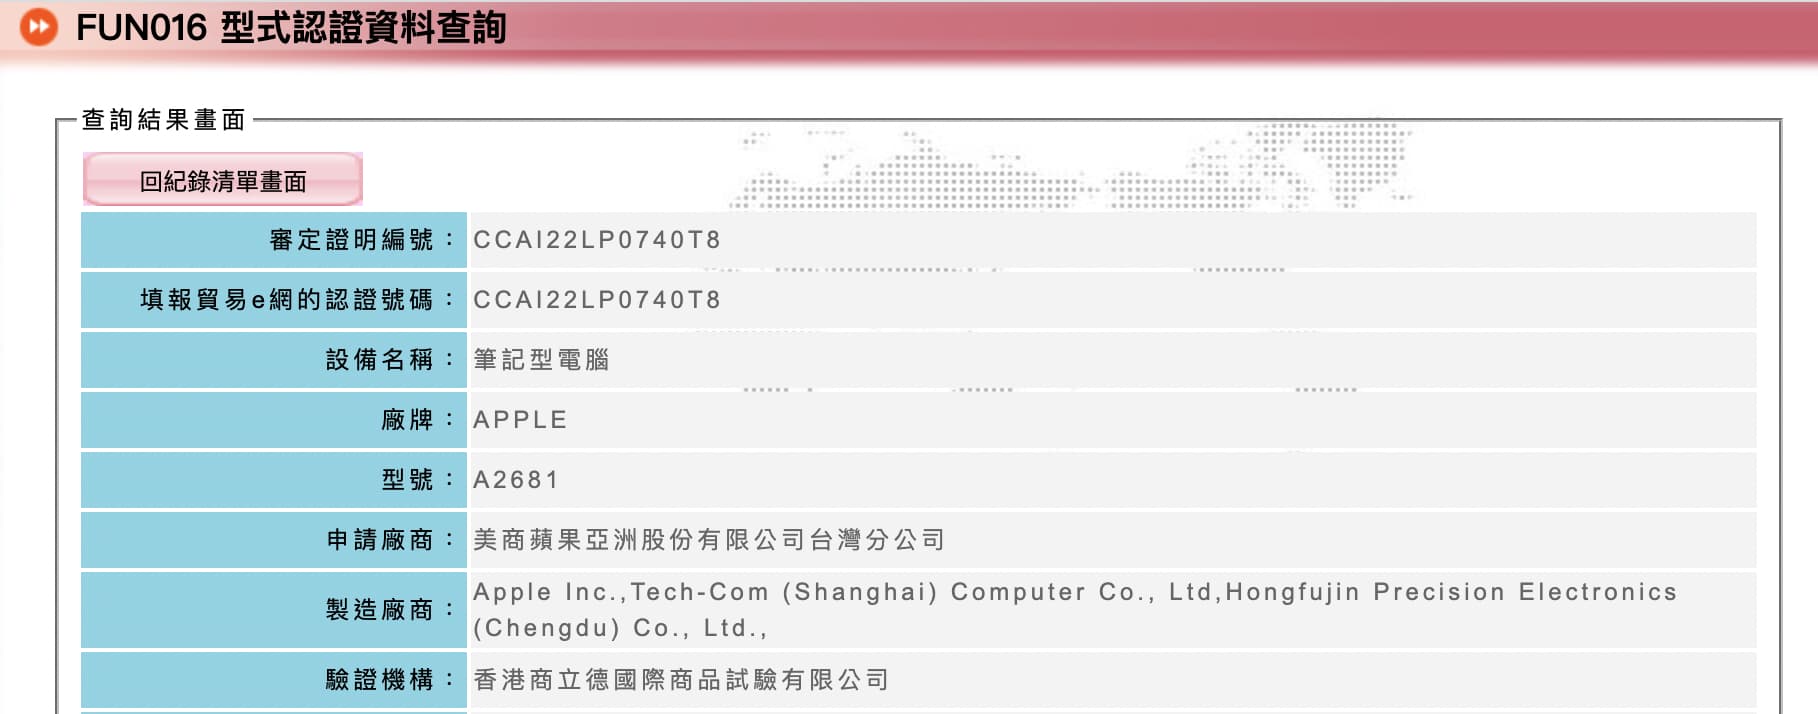 M2 MacBook Air 台灣 NCC 認證通過